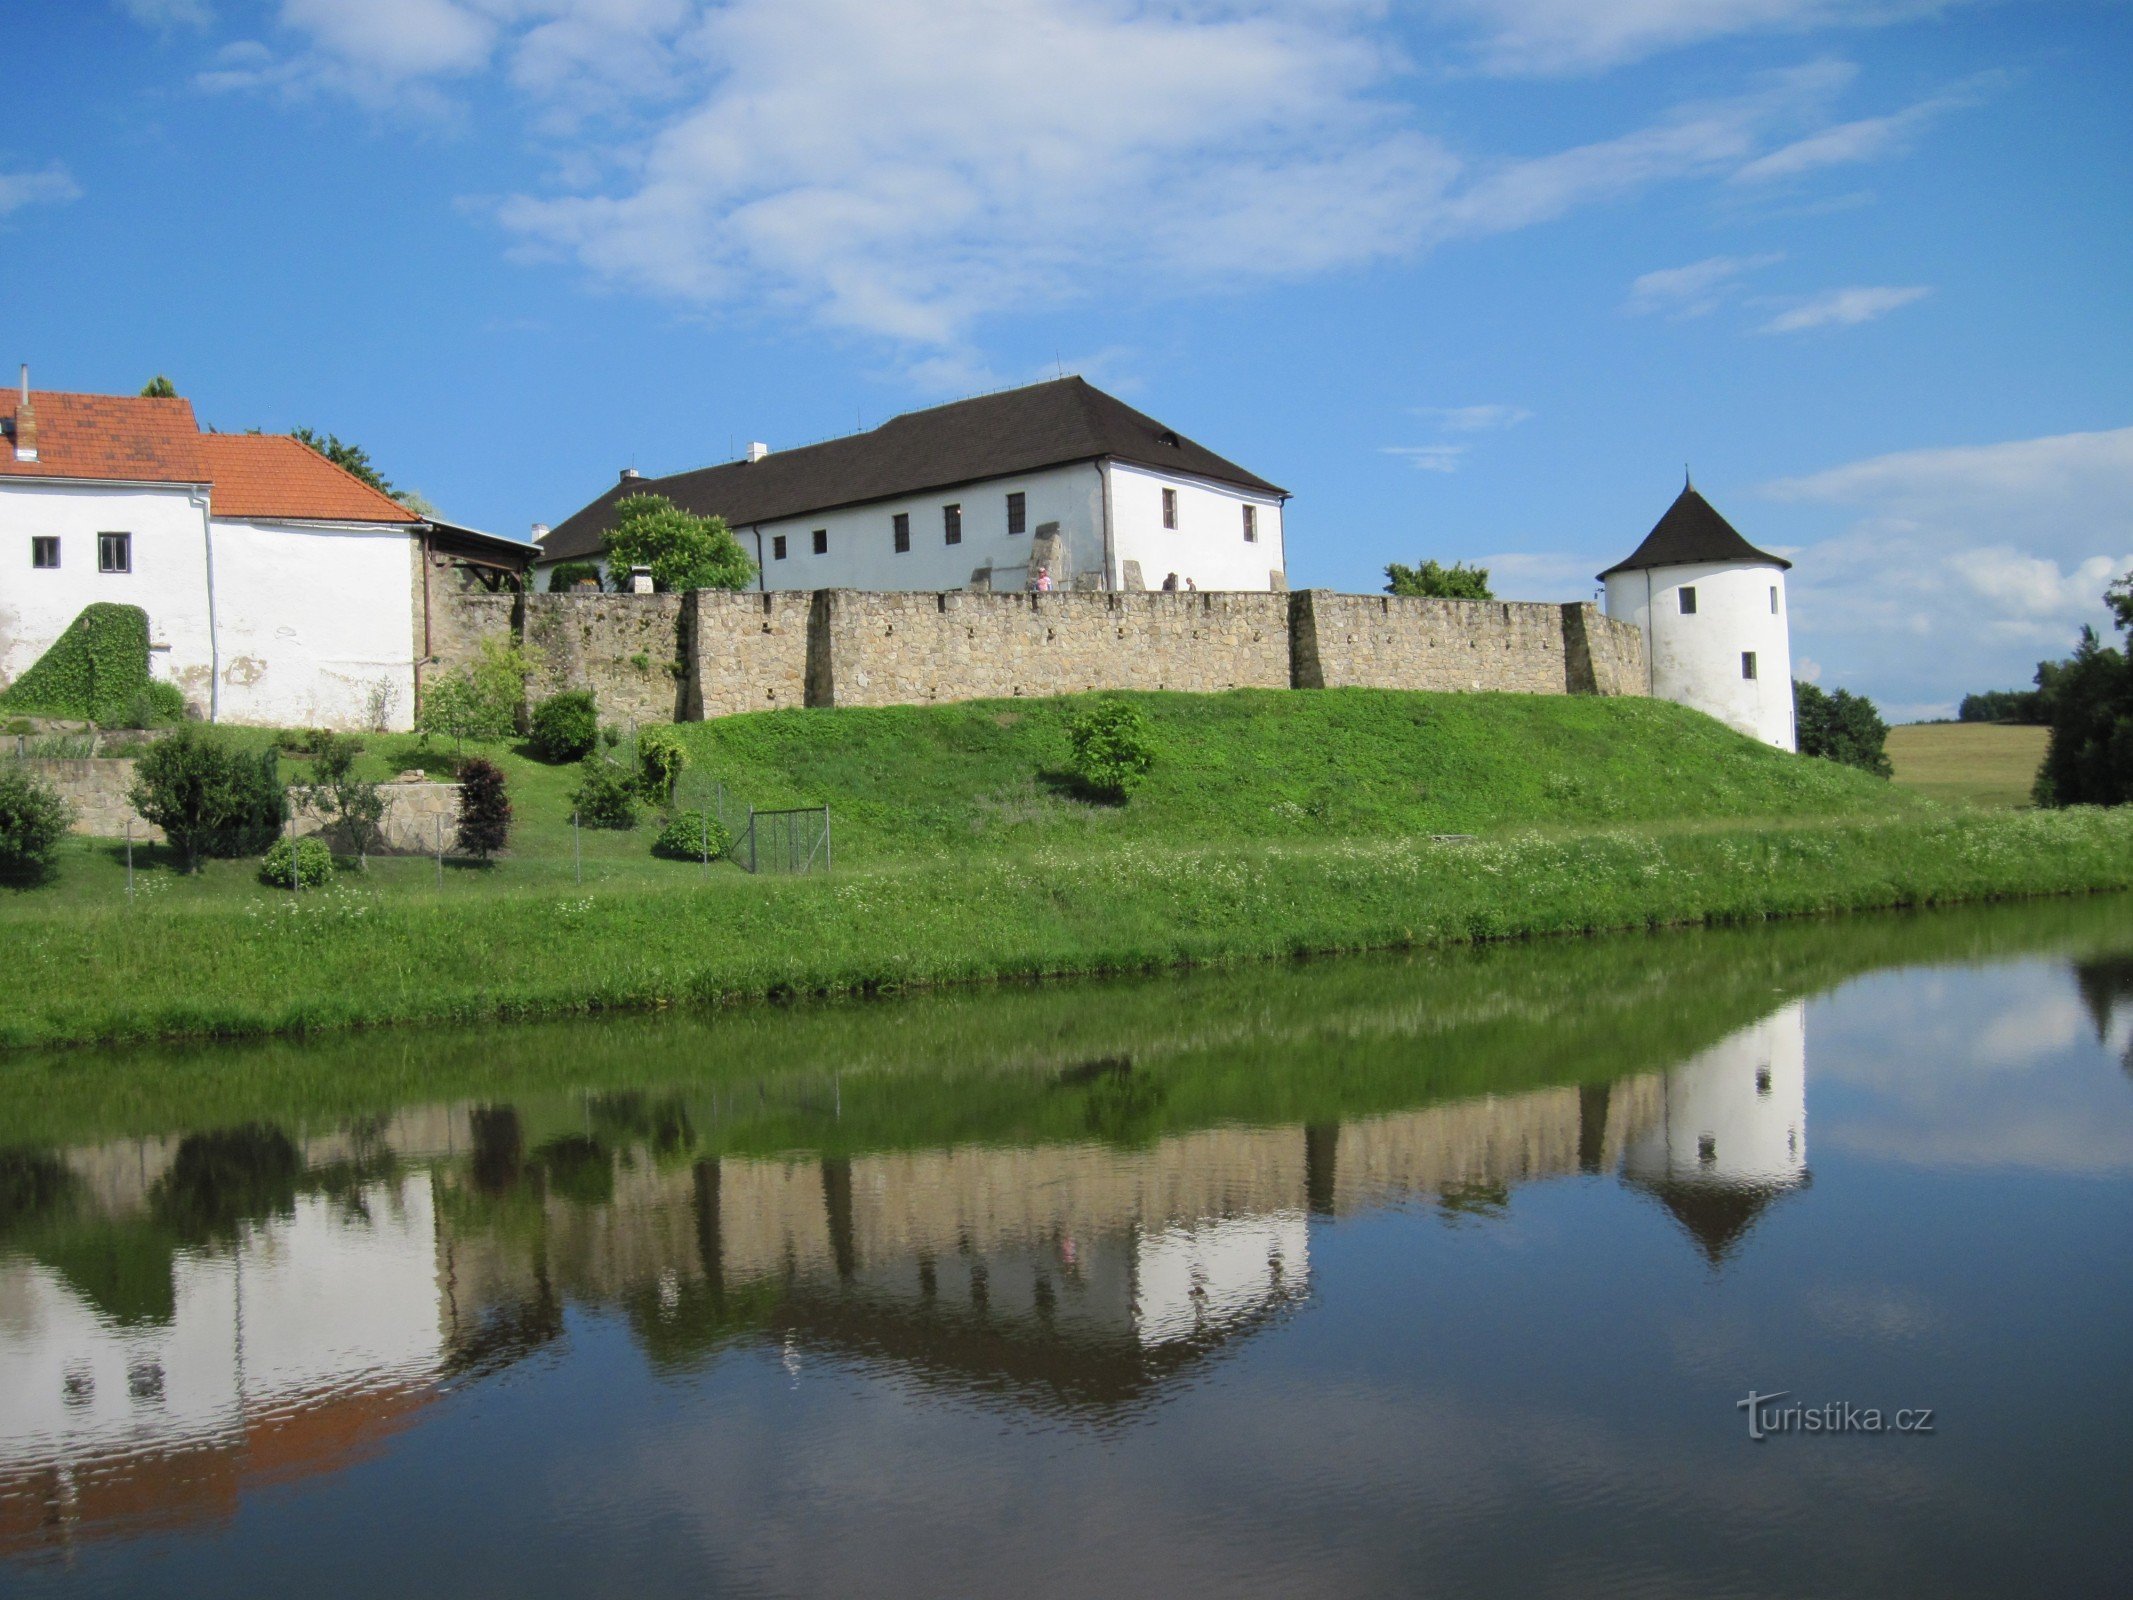 Žumberk, l'une des destinations sur la route